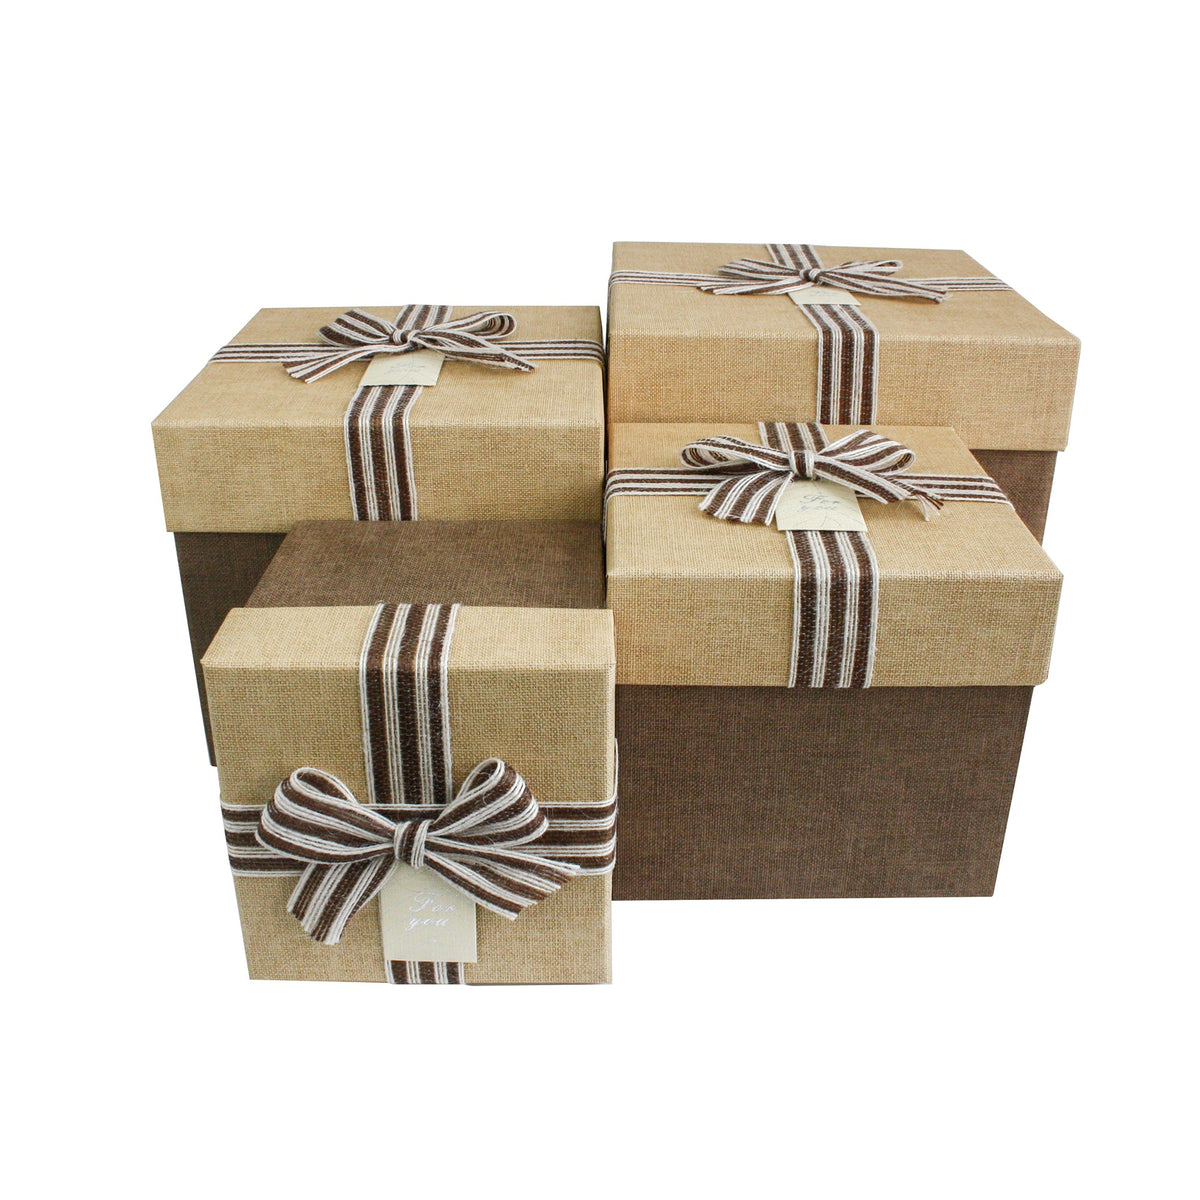 Rustic Natural Burlap Gift Boxes - Set of 4